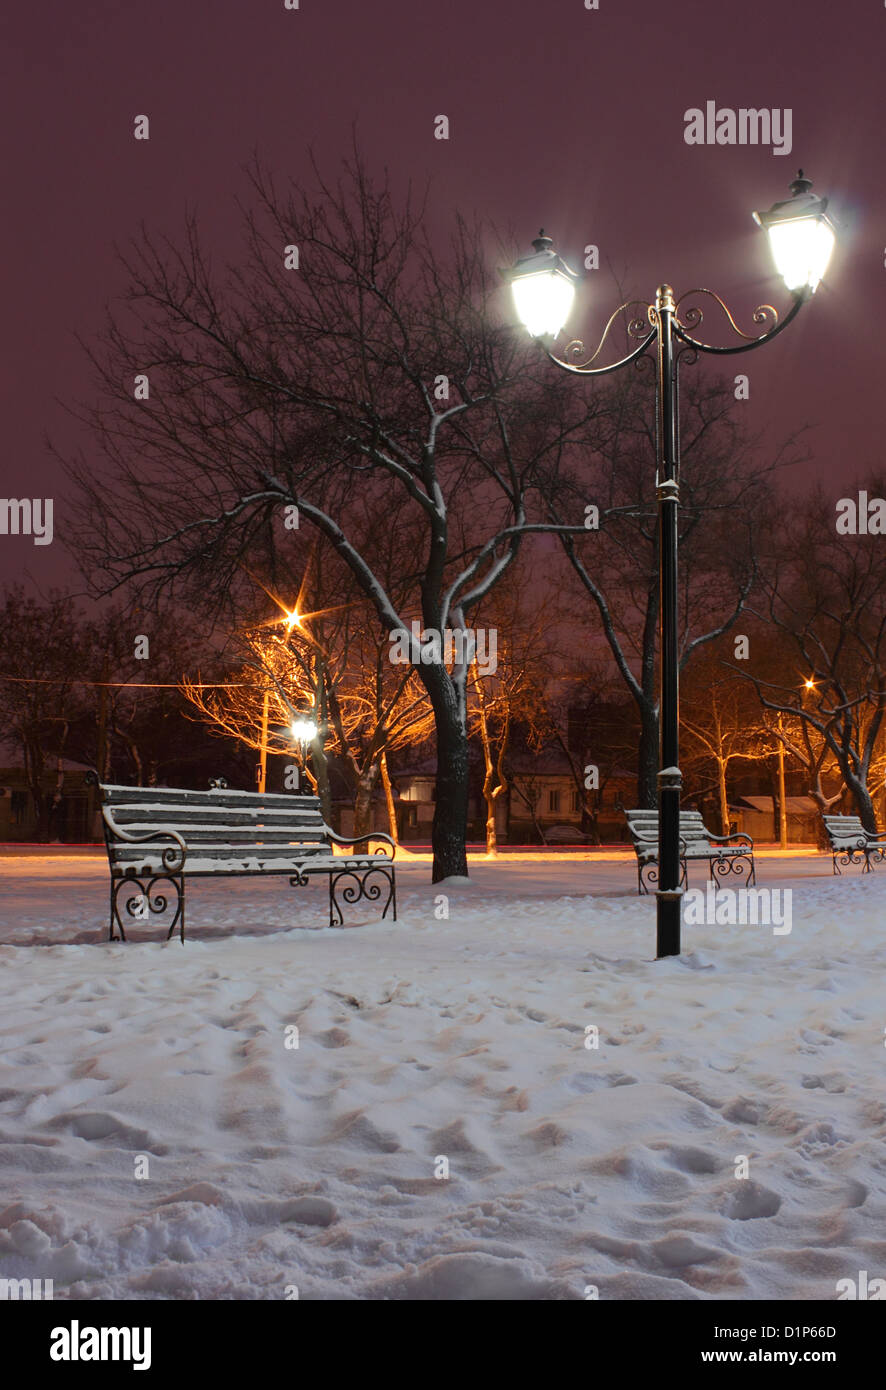 Au parc de la rue lanterne dans la nuit d'hiver Banque D'Images